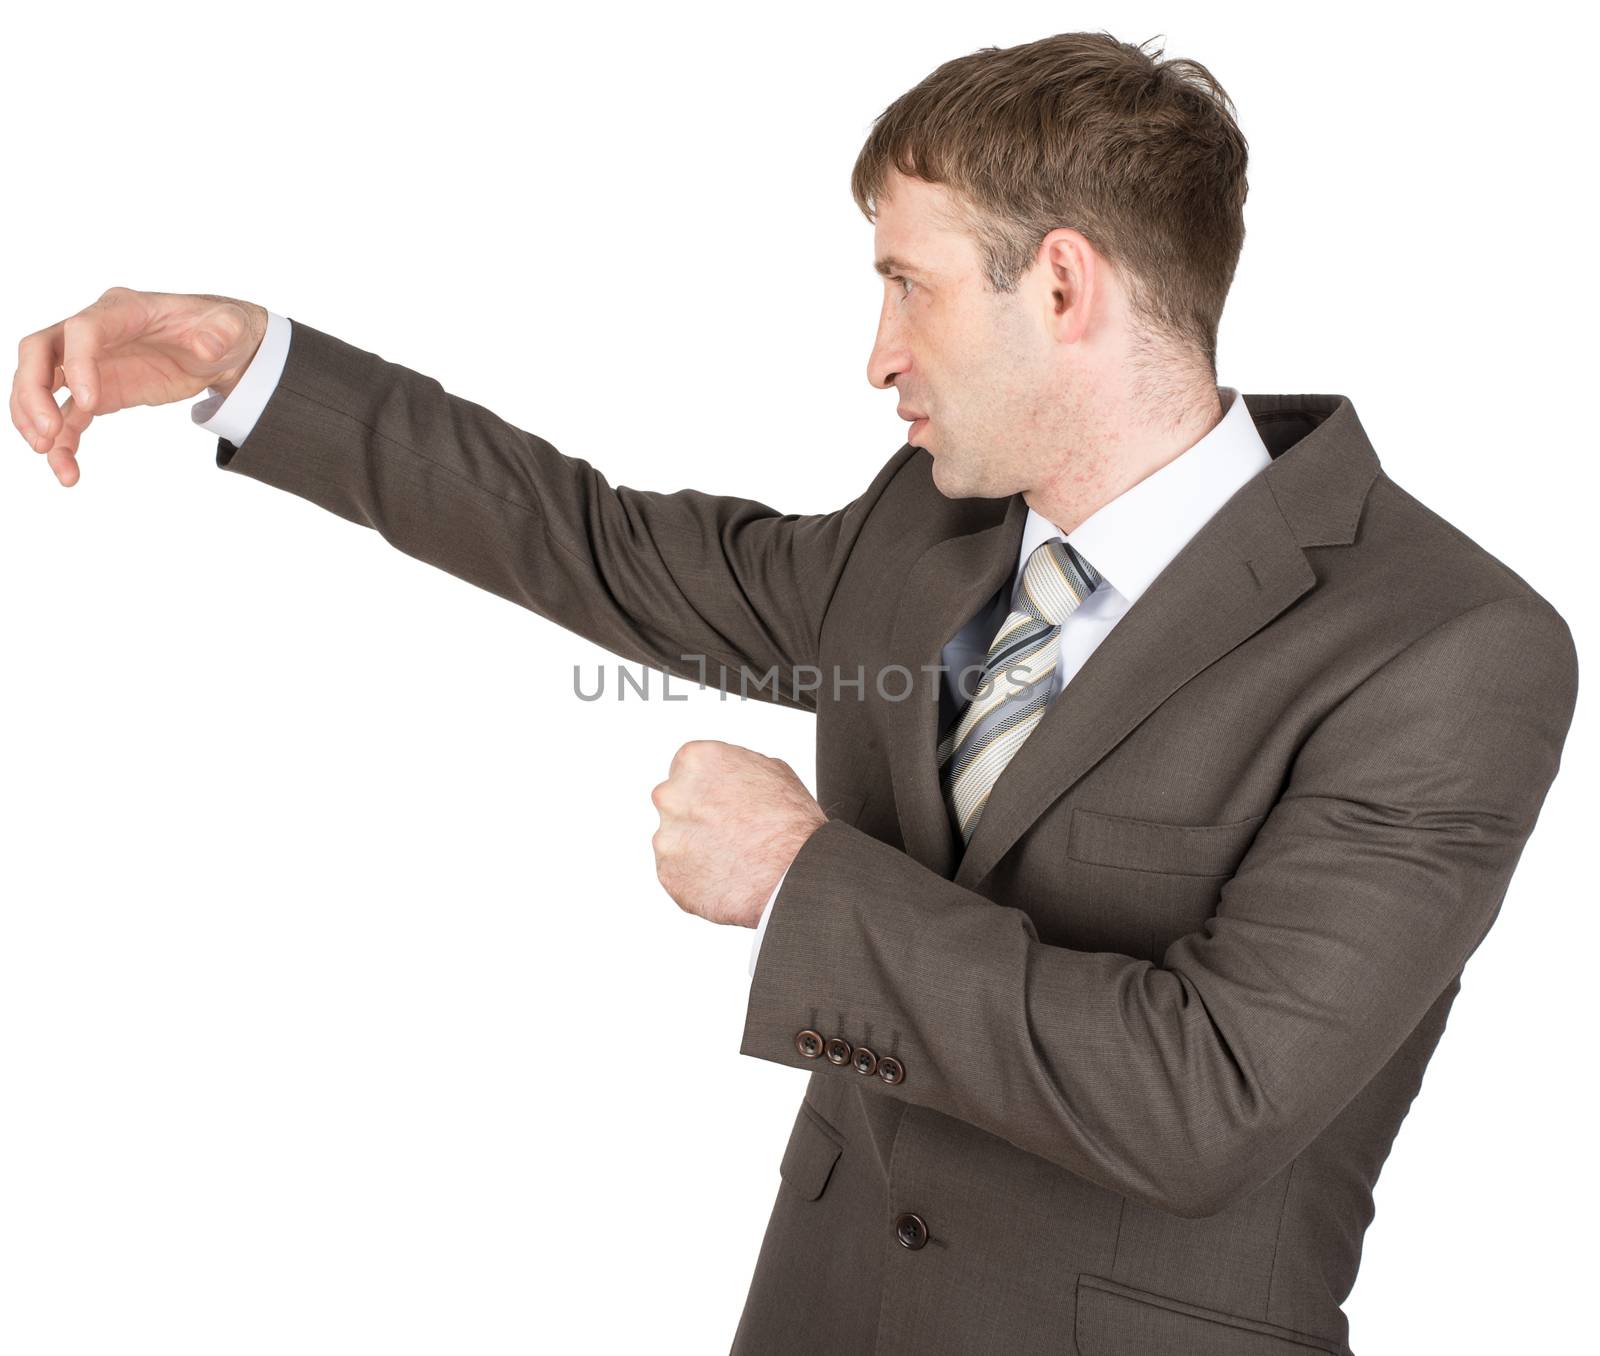 Holding something of hand shape on white background. Businessman hitting copyspace